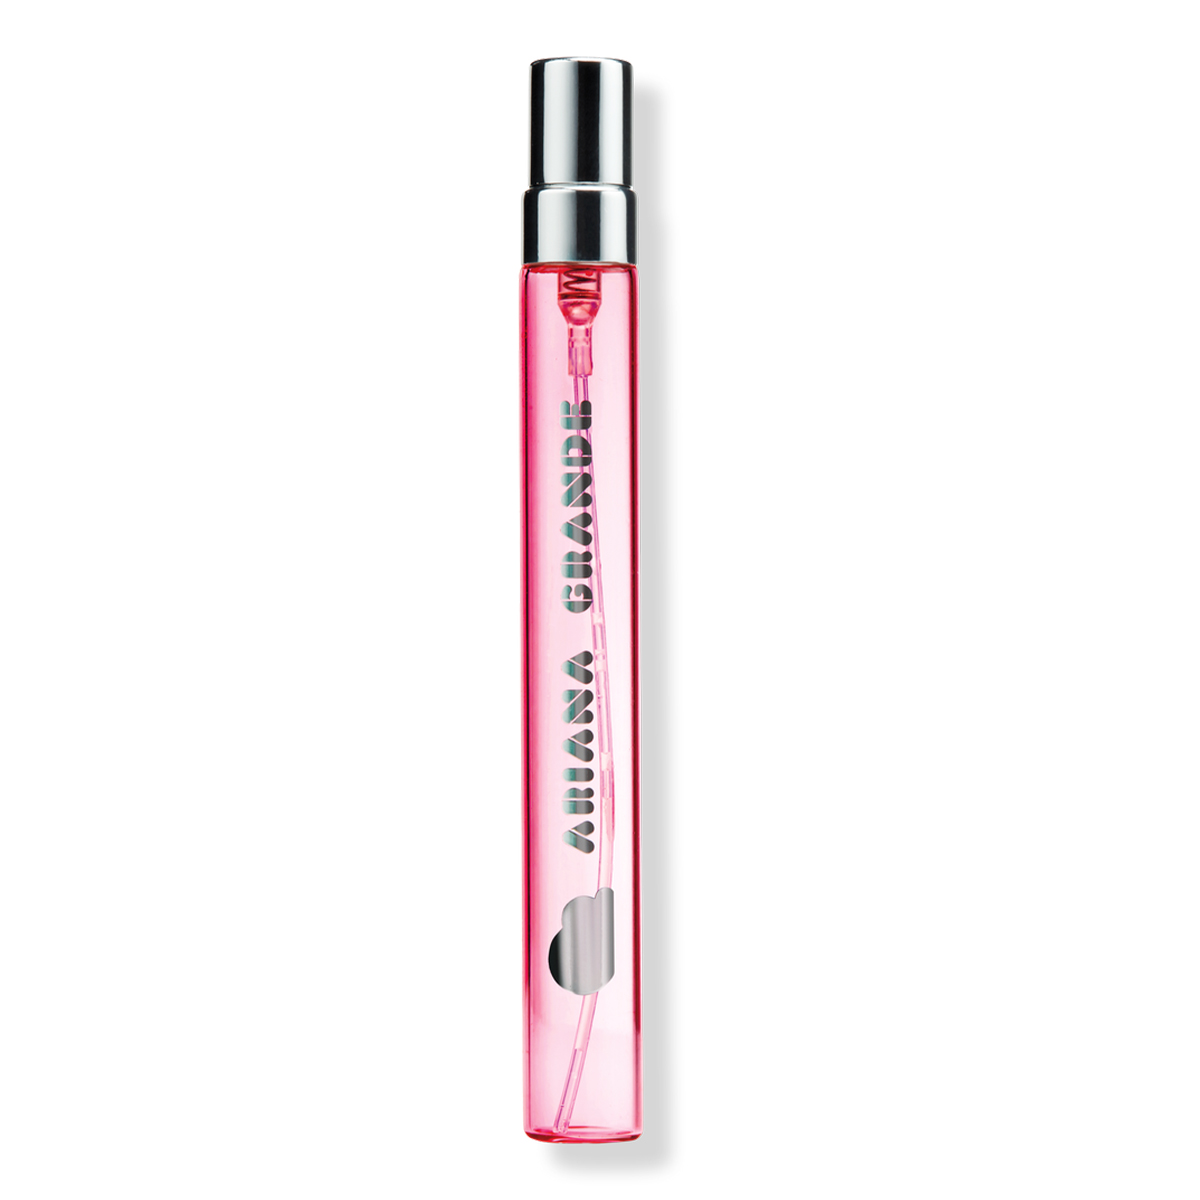 Ariana Grande + Cloud Pink Eau De Parfum Travel Spray